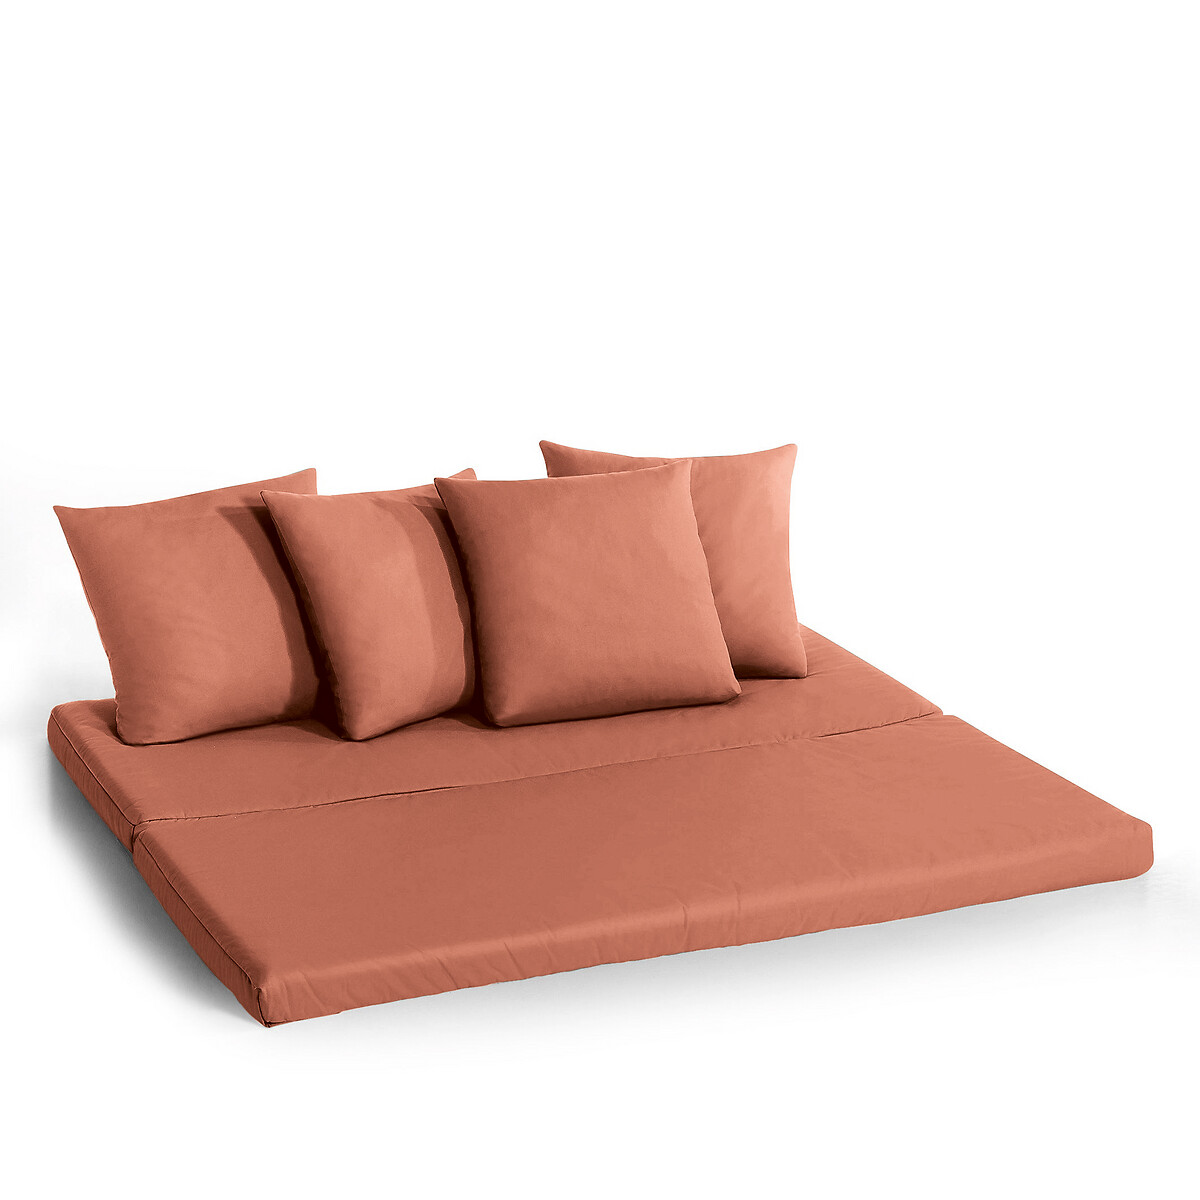 Матрас LaRedoute И подушки для дивана Giada 80 x 190 см каштановый, размер 80 x 190 см - фото 2